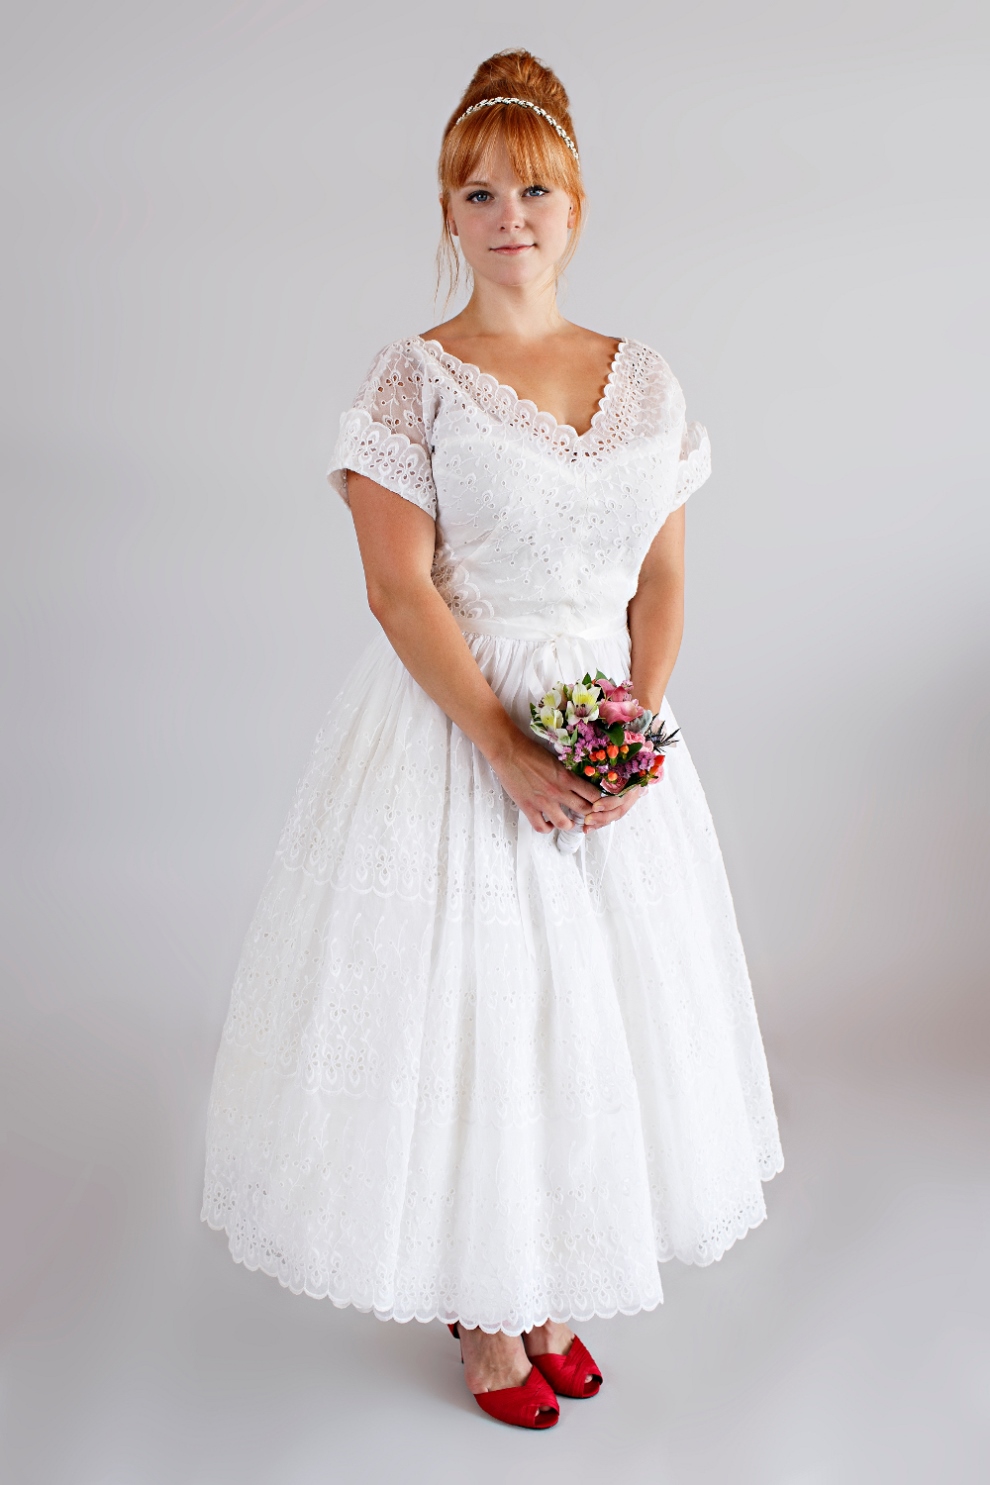 Beloved Vintage Bridal - The Emma Dress